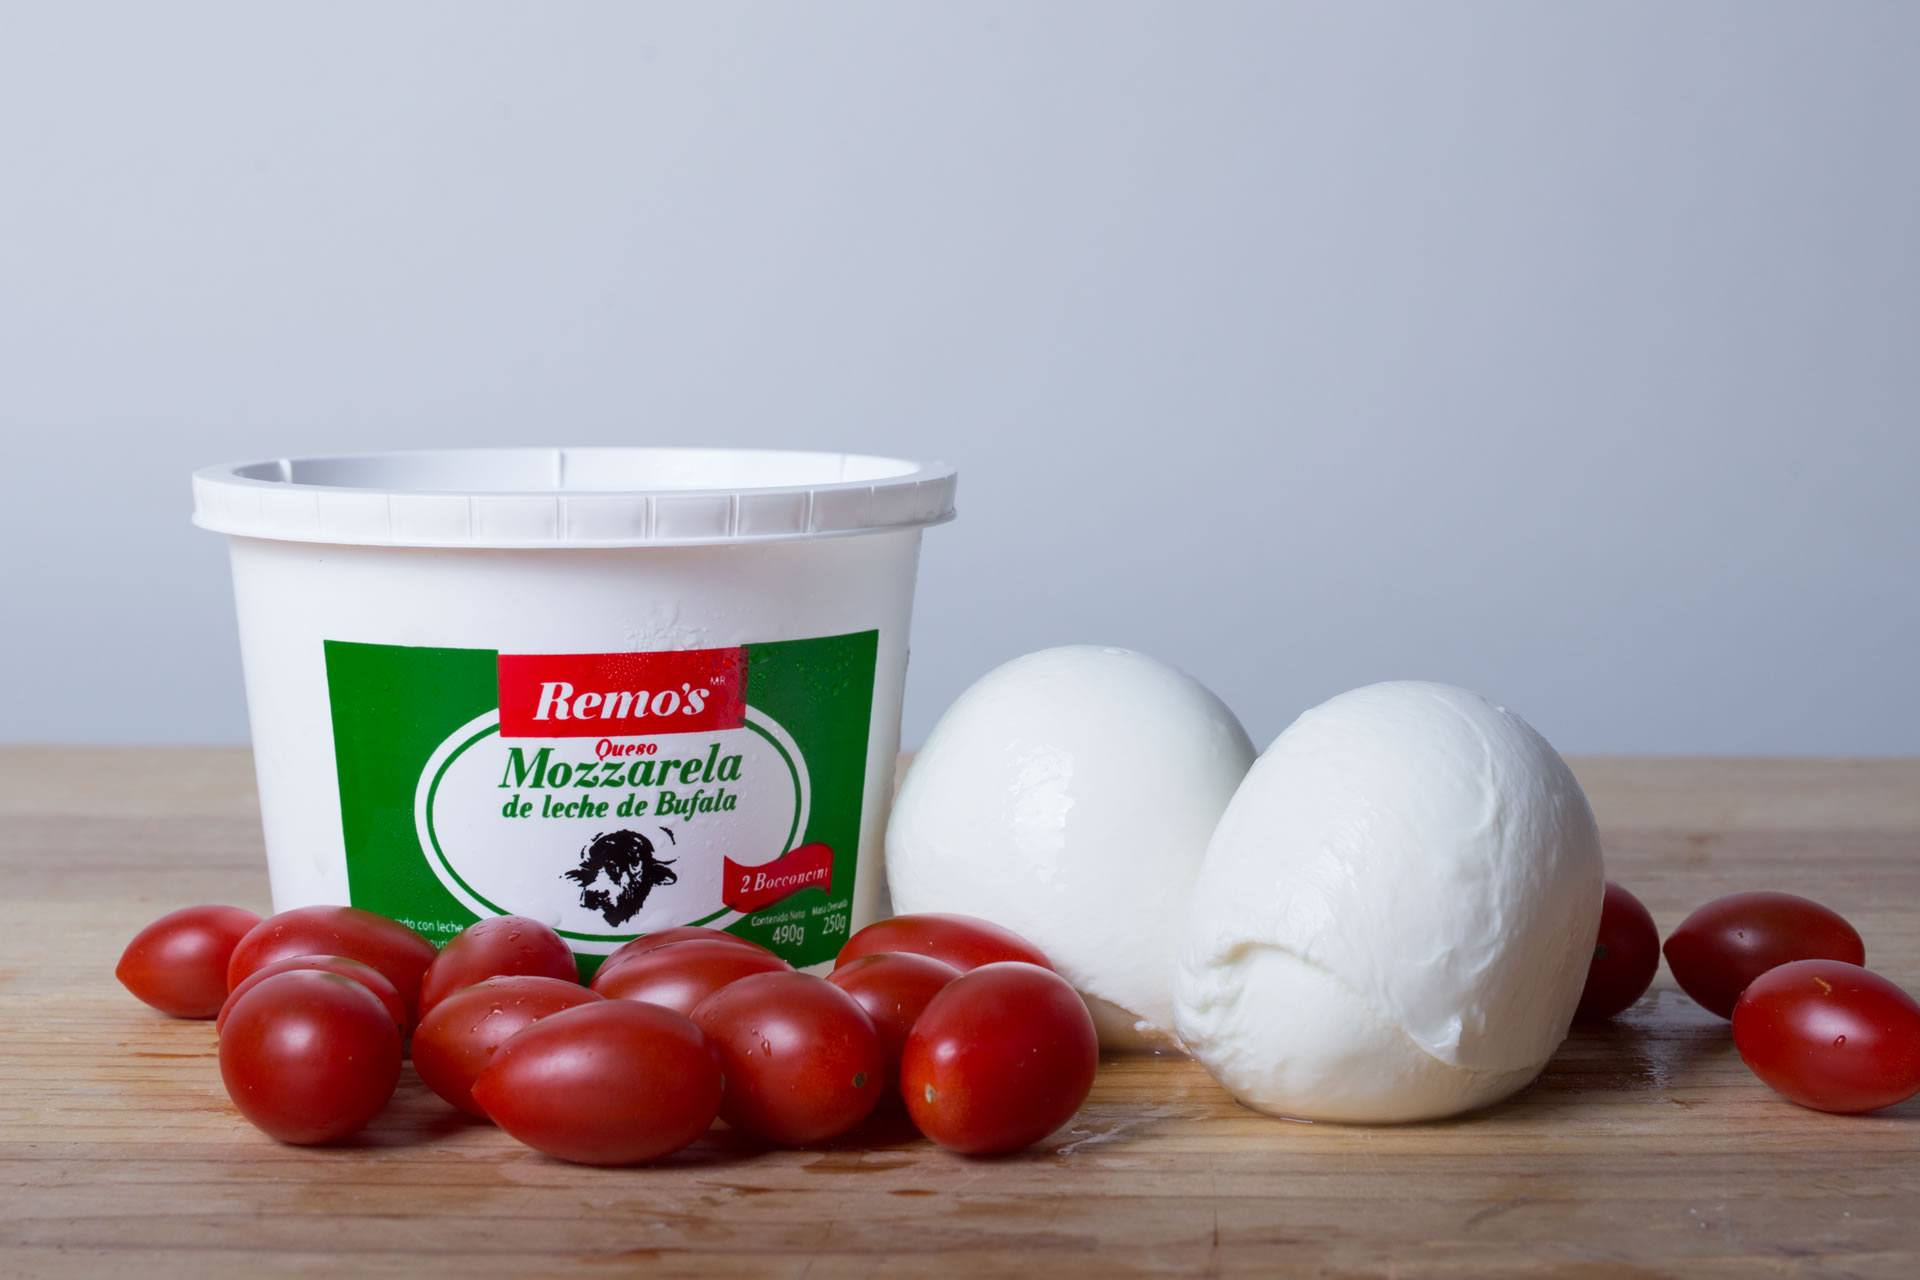 Bocconcini de Mozzarella - Productos Remo